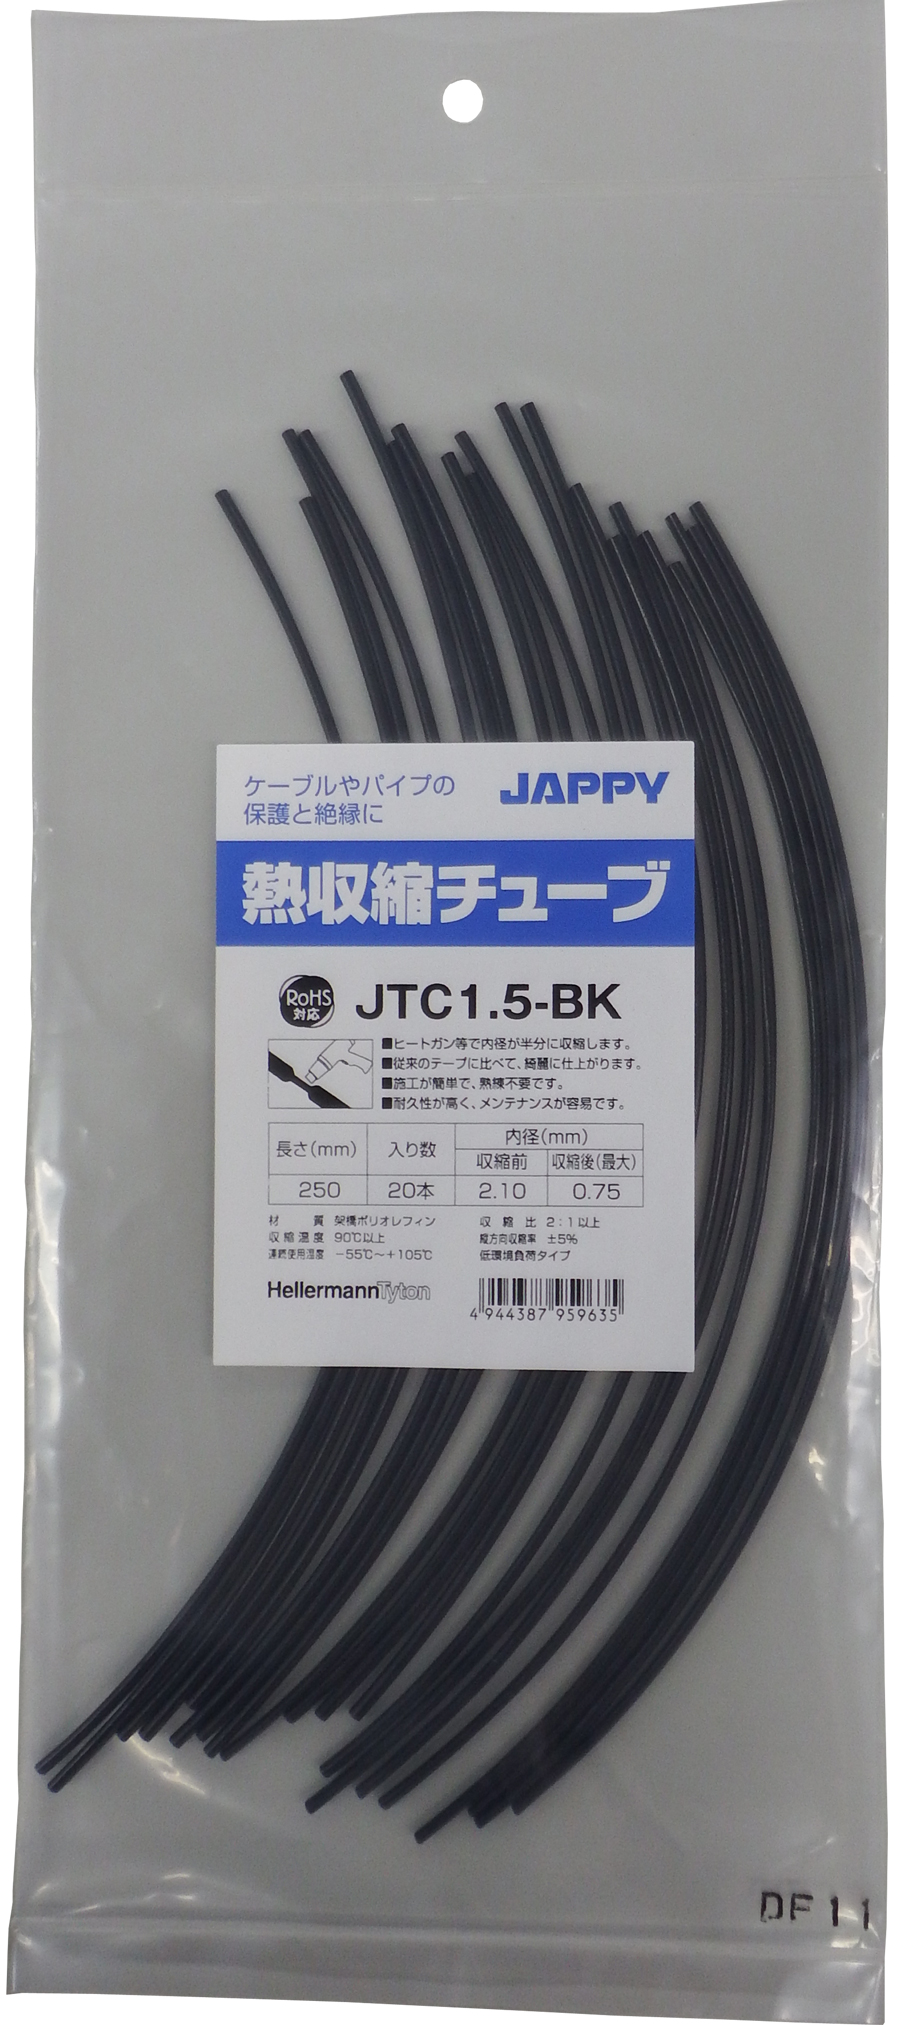 熱収縮チューブ JTC1.5-BK 250MM 20ホン ネツシュウシュクチューブ